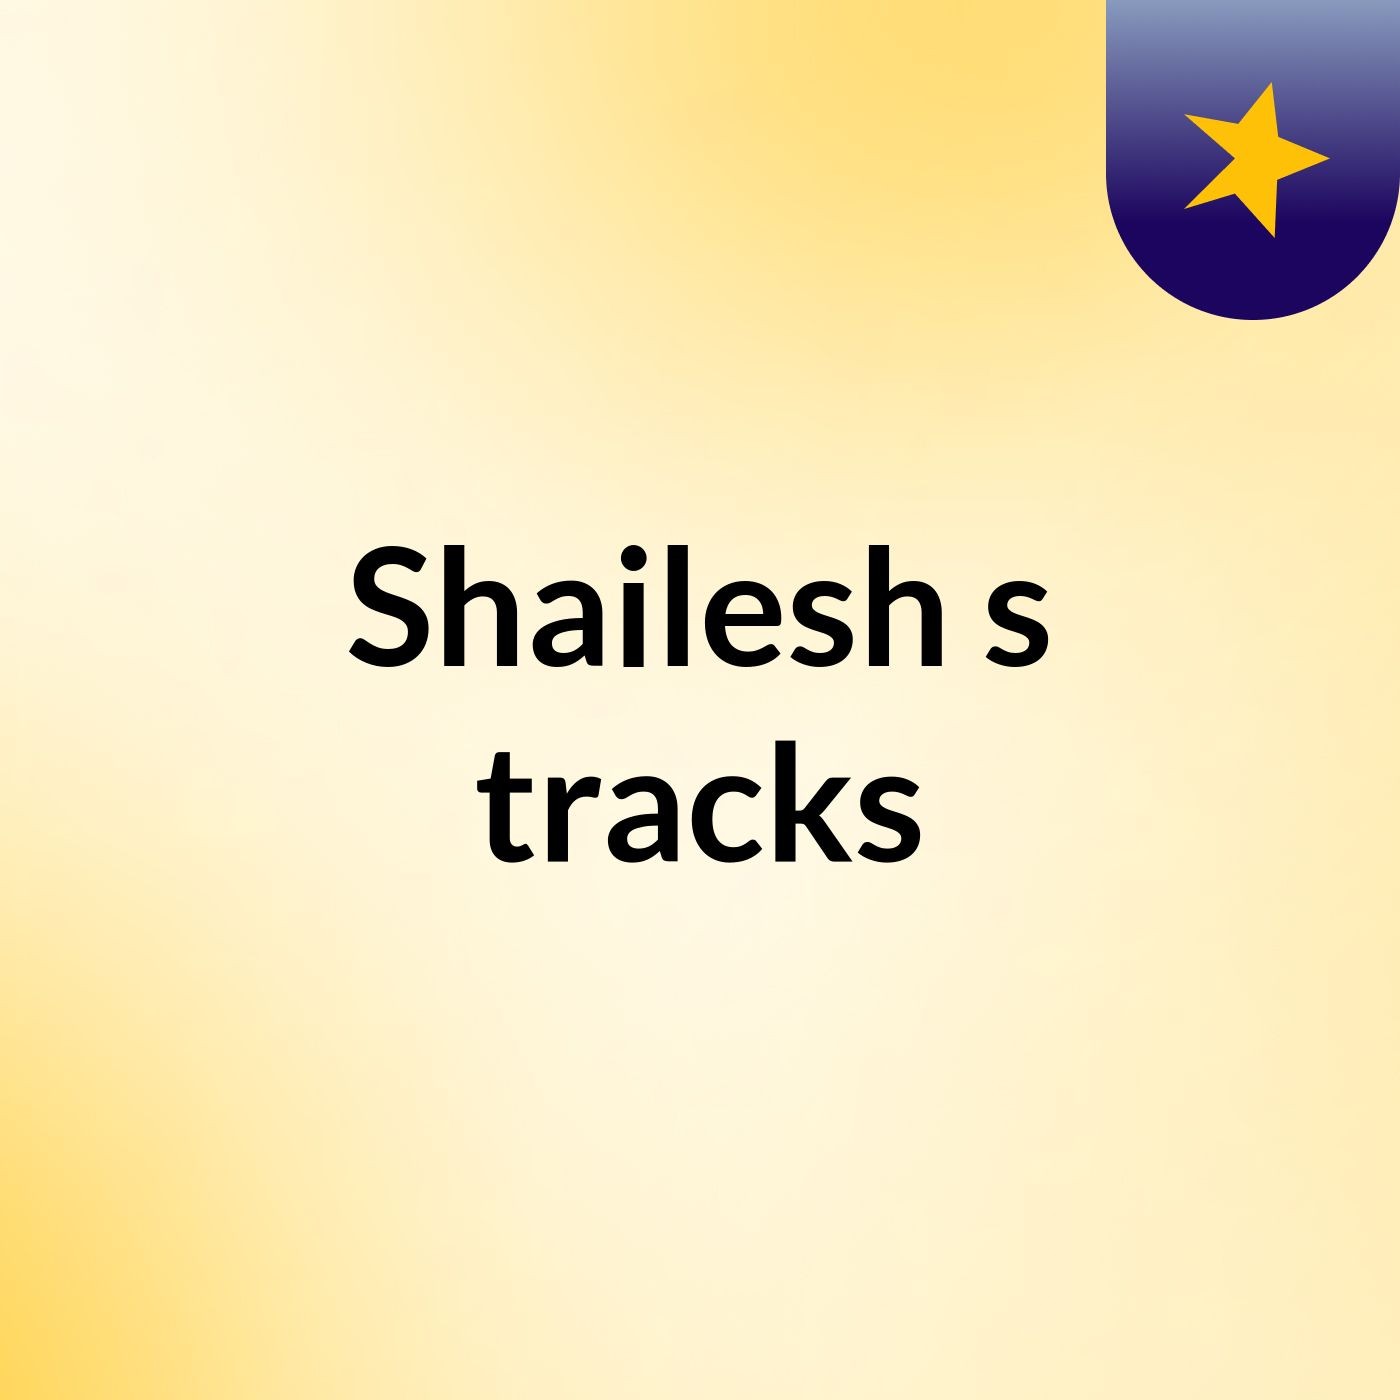 Shailesh's tracks